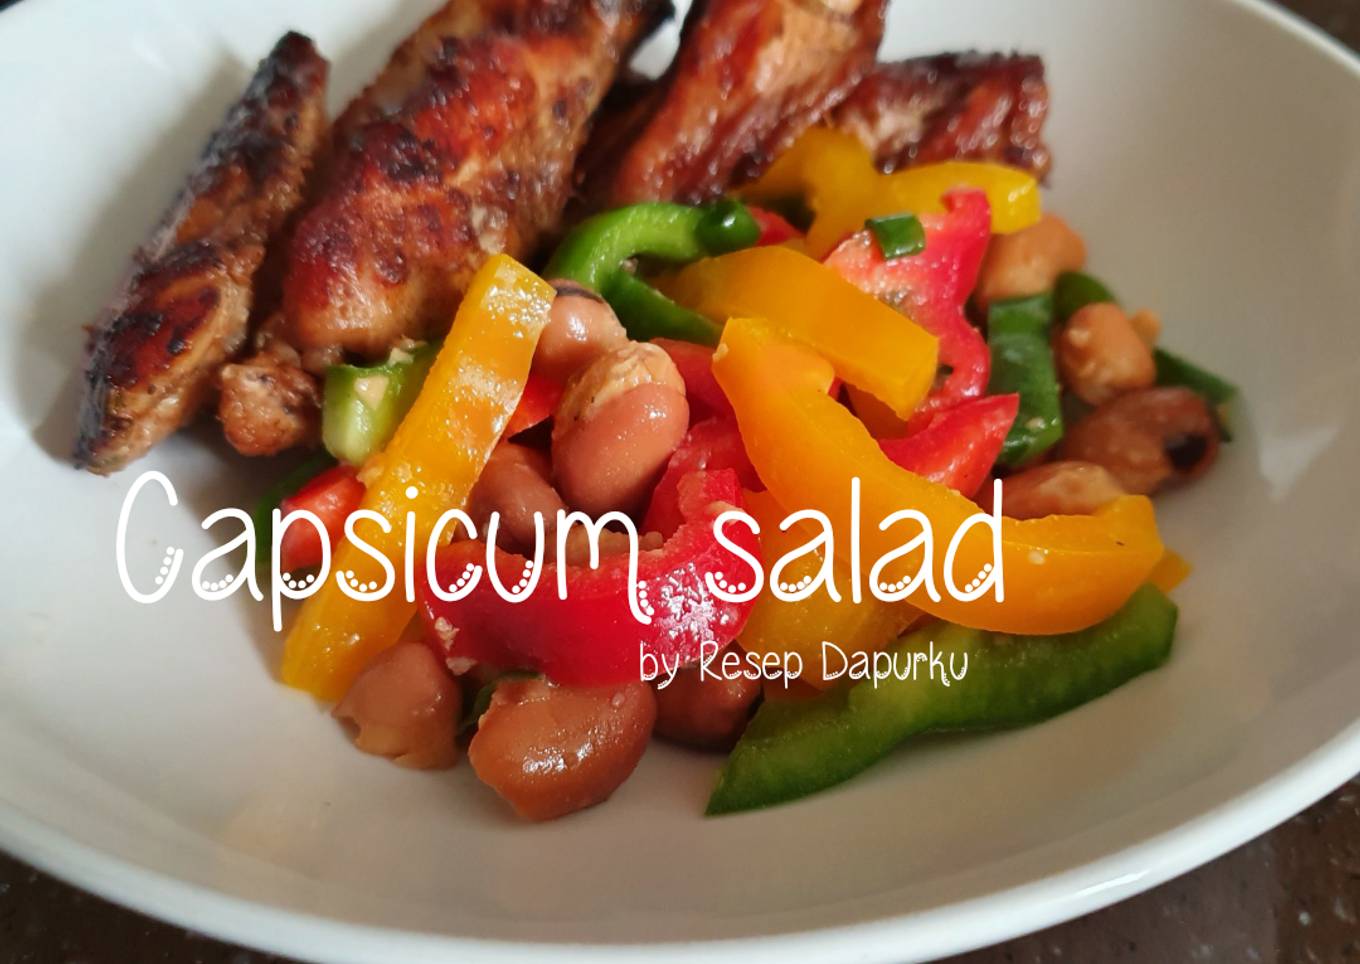 Capsicum salad